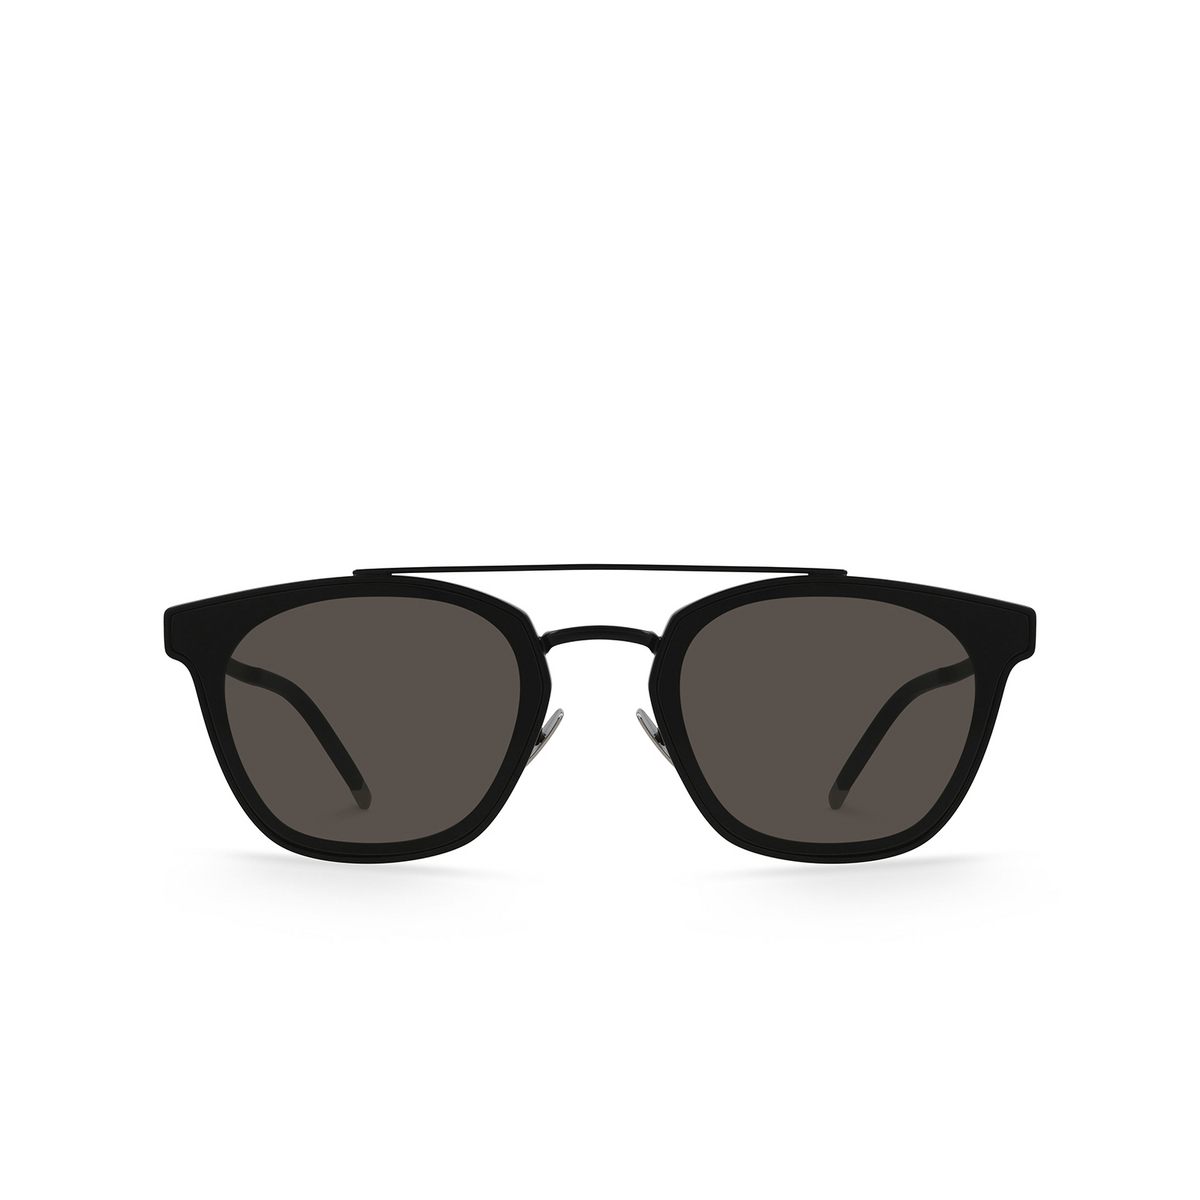 Saint Laurent SL 28 METAL Sunglasses 001 Black - front view